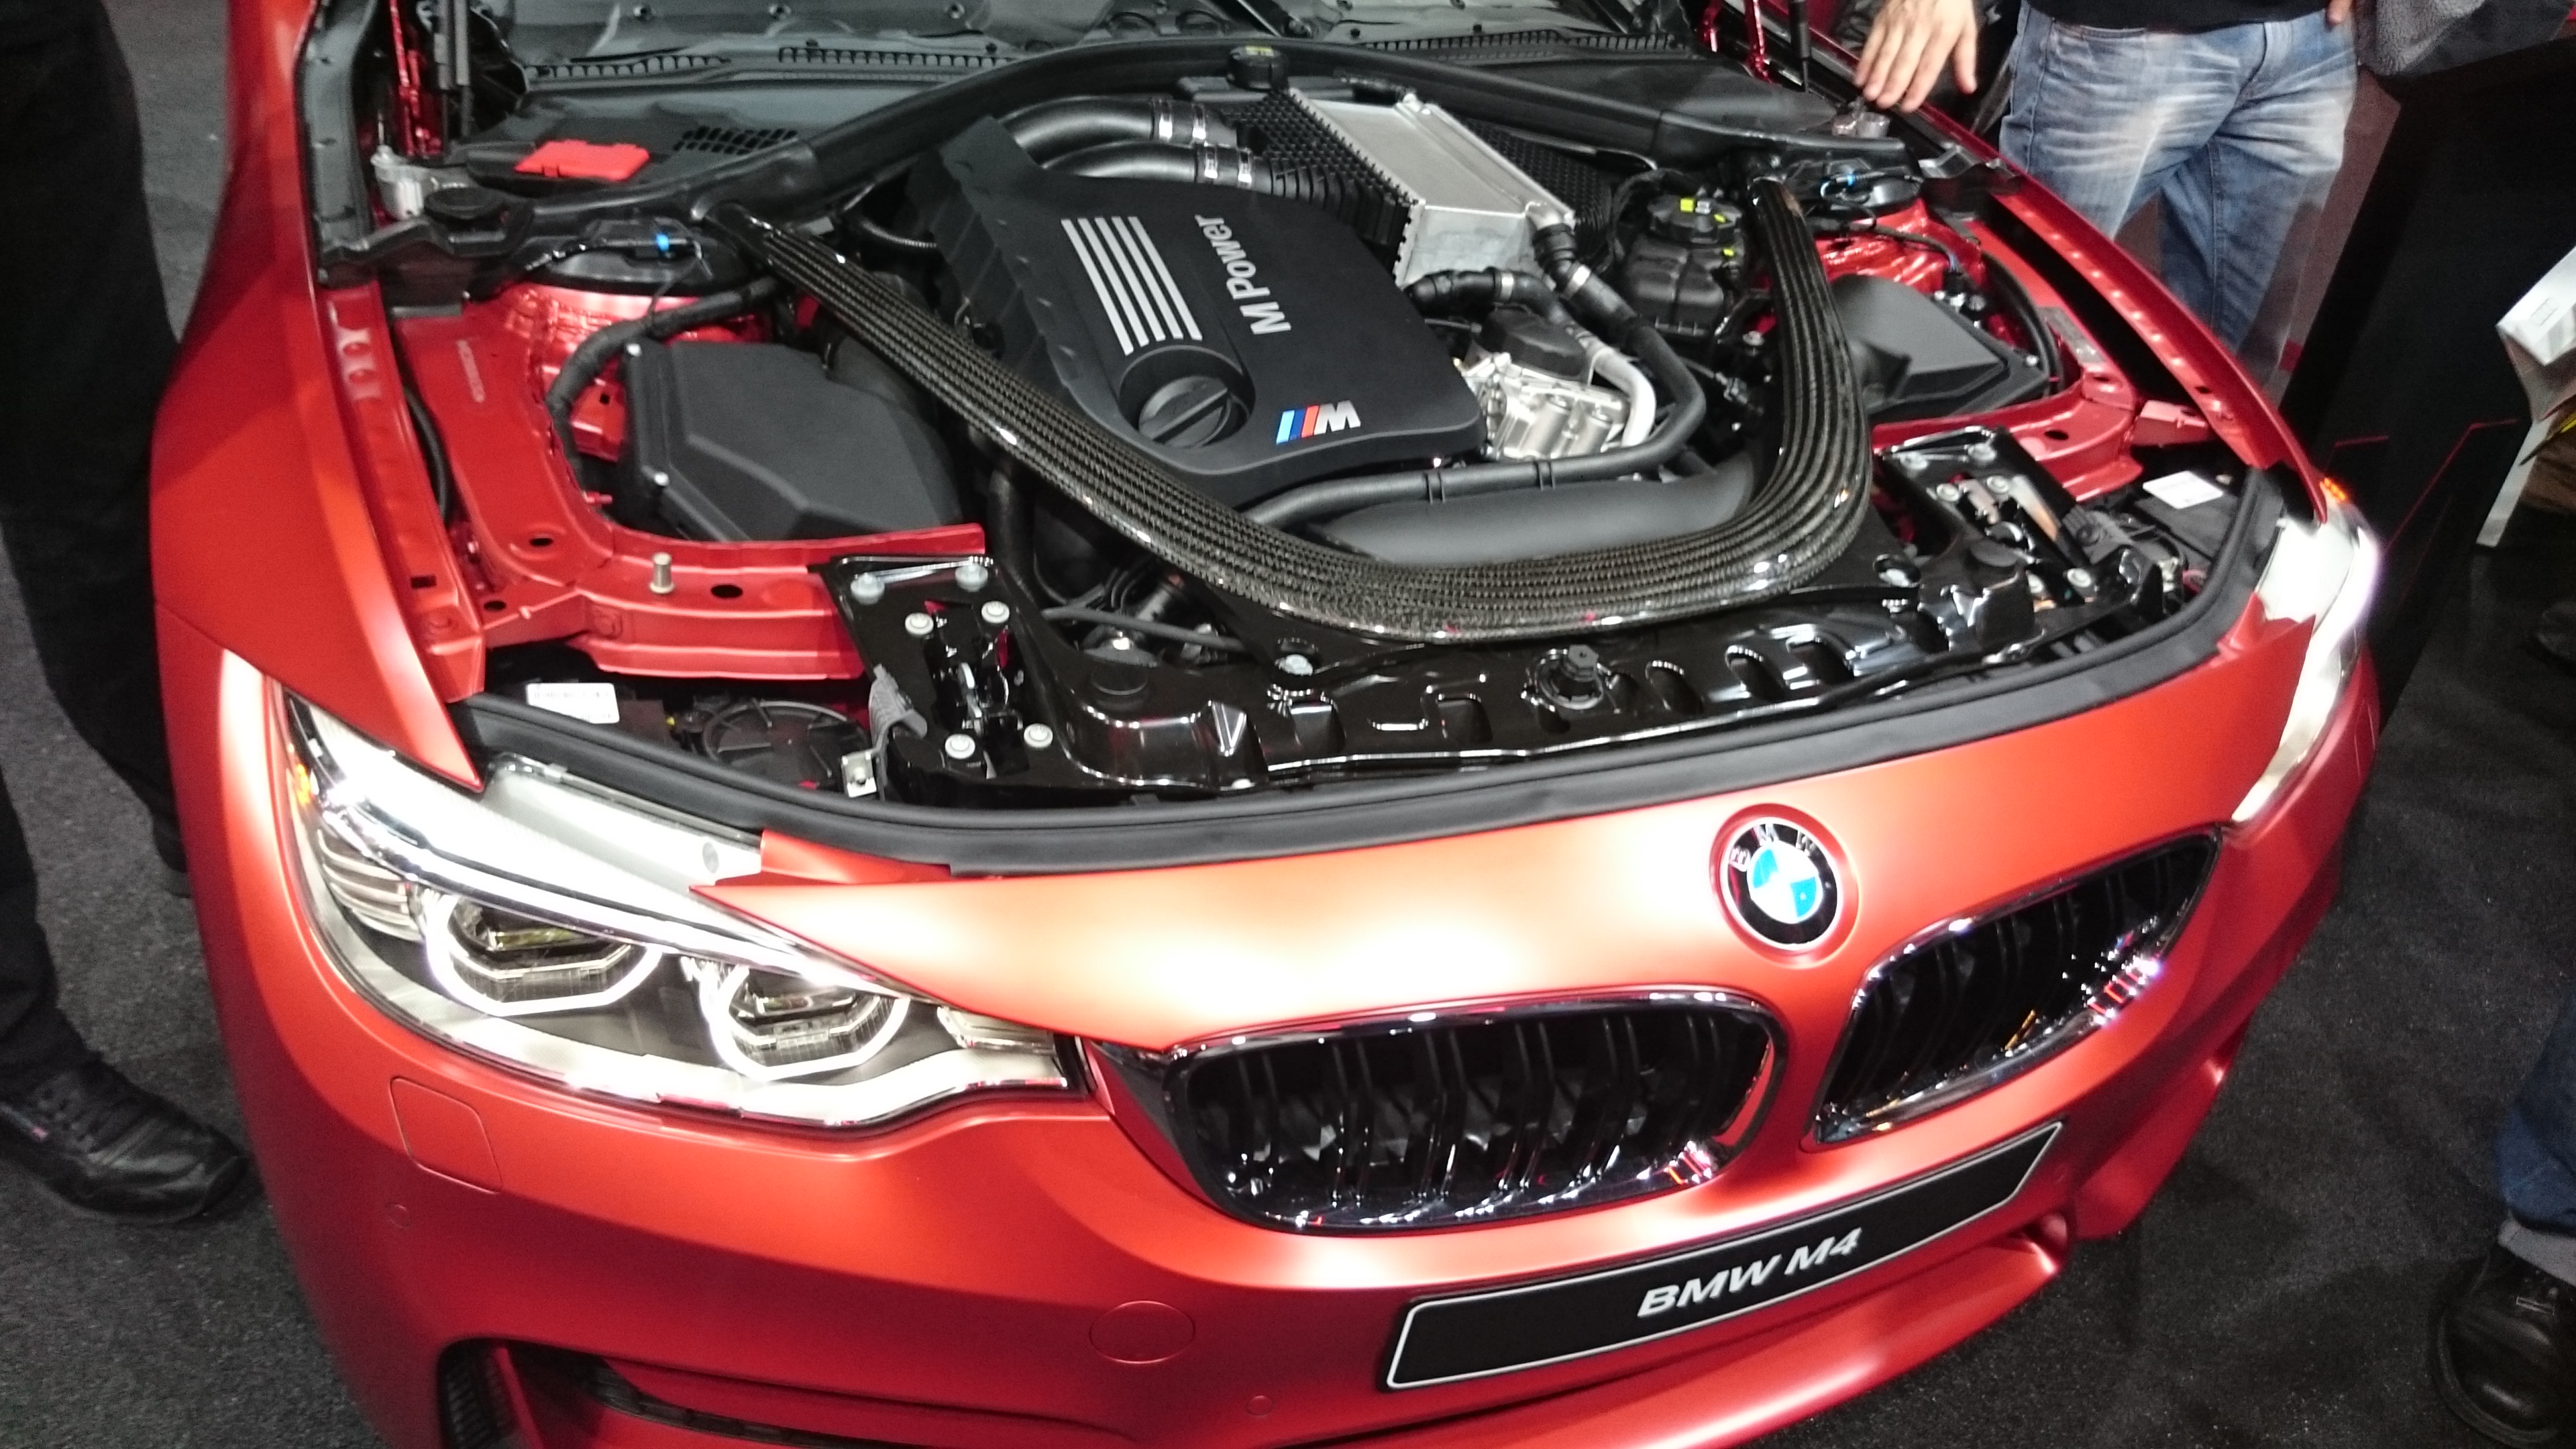 Fotos 360 del BMW M4 #VidePan en #IAA2015